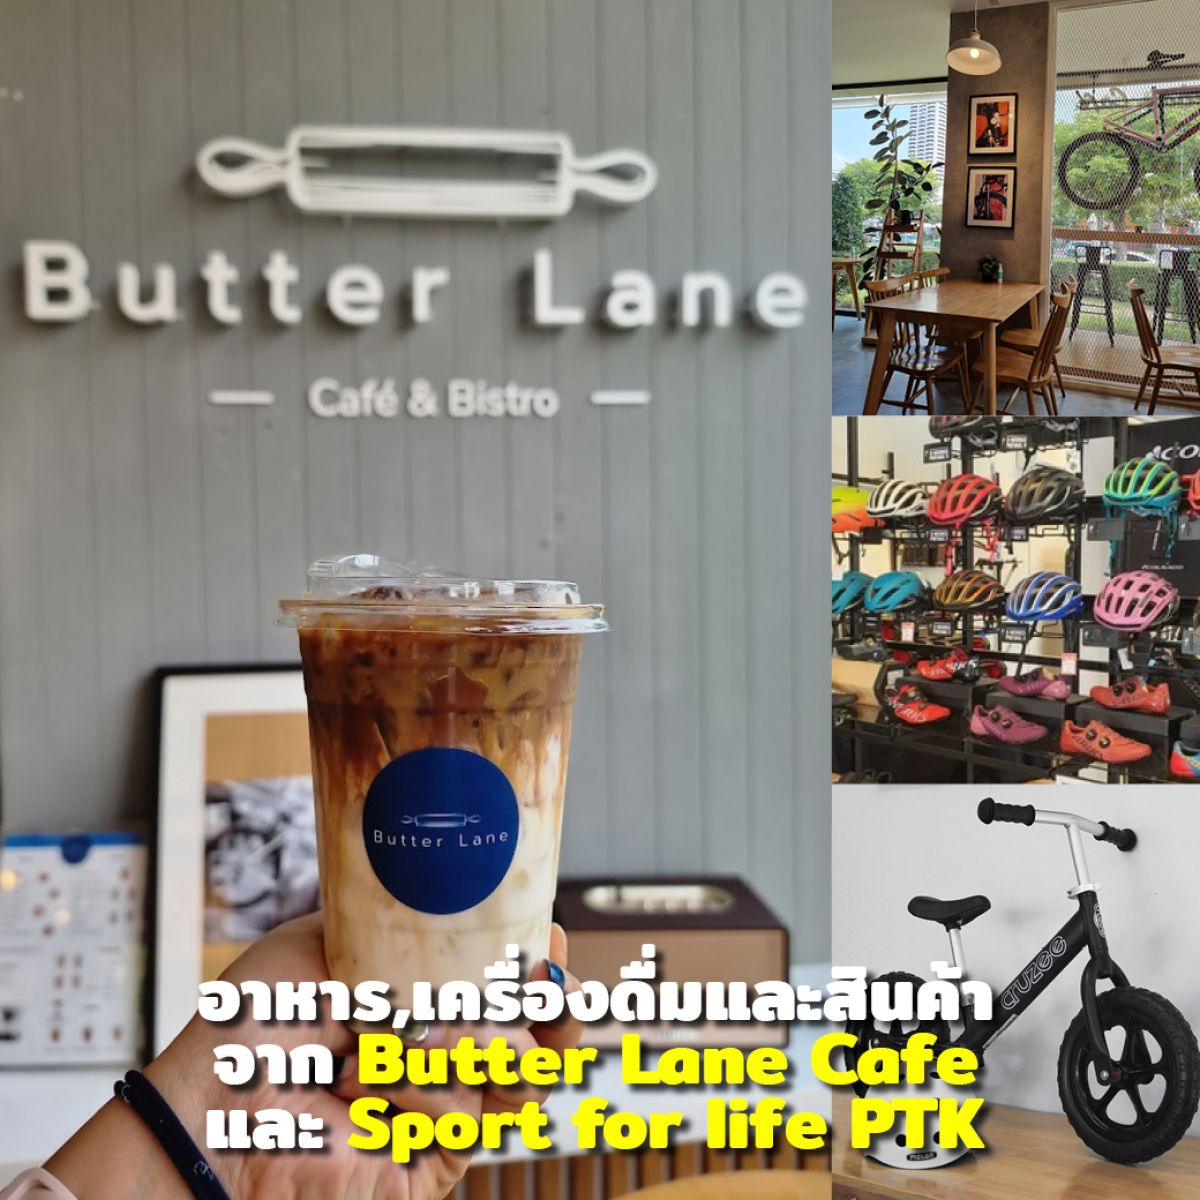 BUTTER LANE และร้านจักรยาน